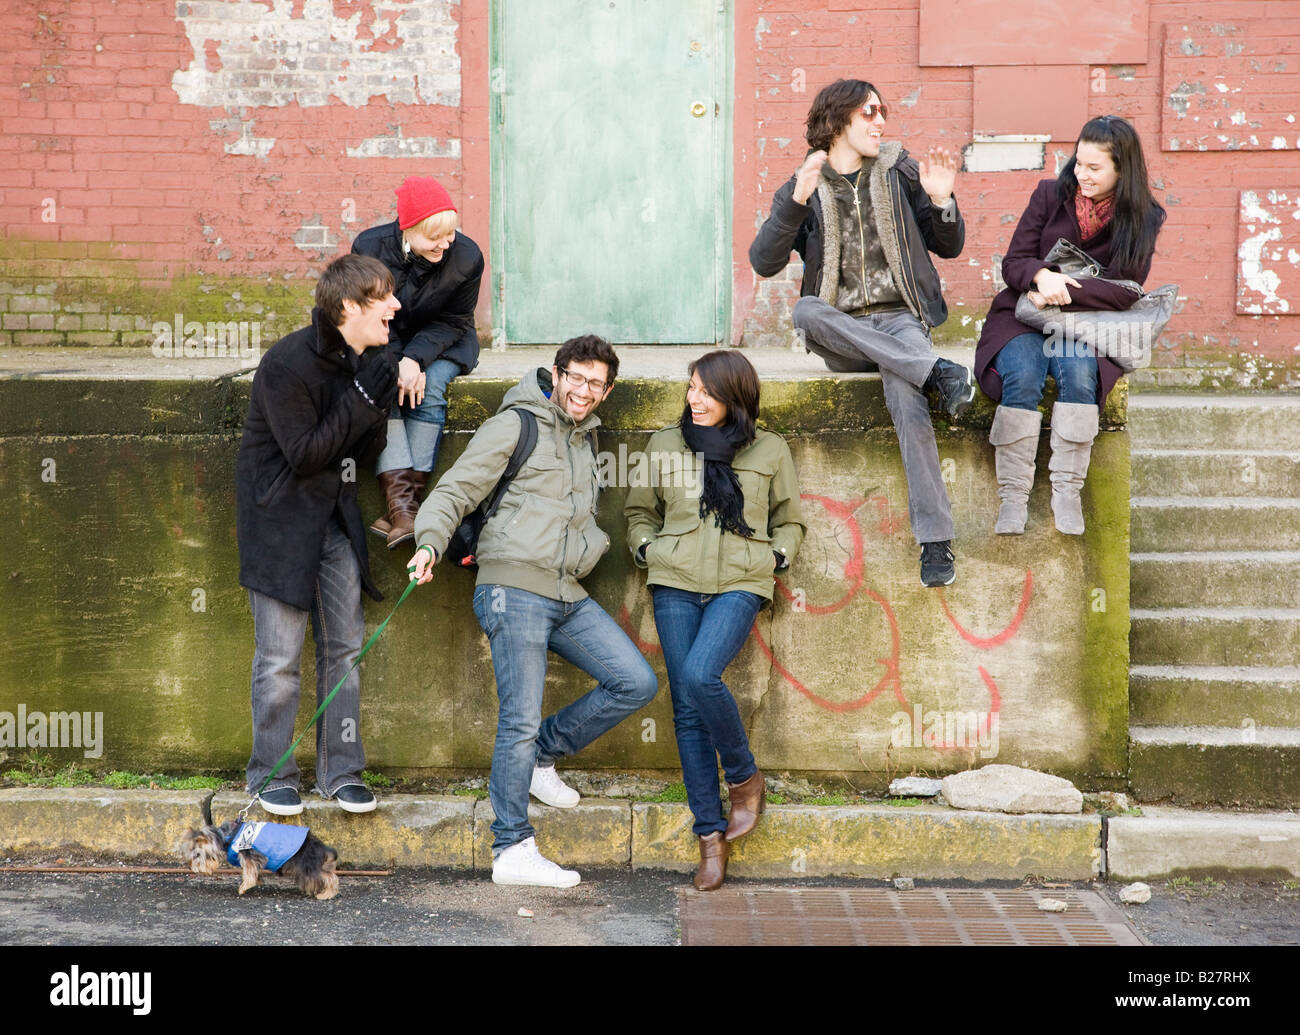 Grupo de amigos sentado en escena urbana Foto de stock